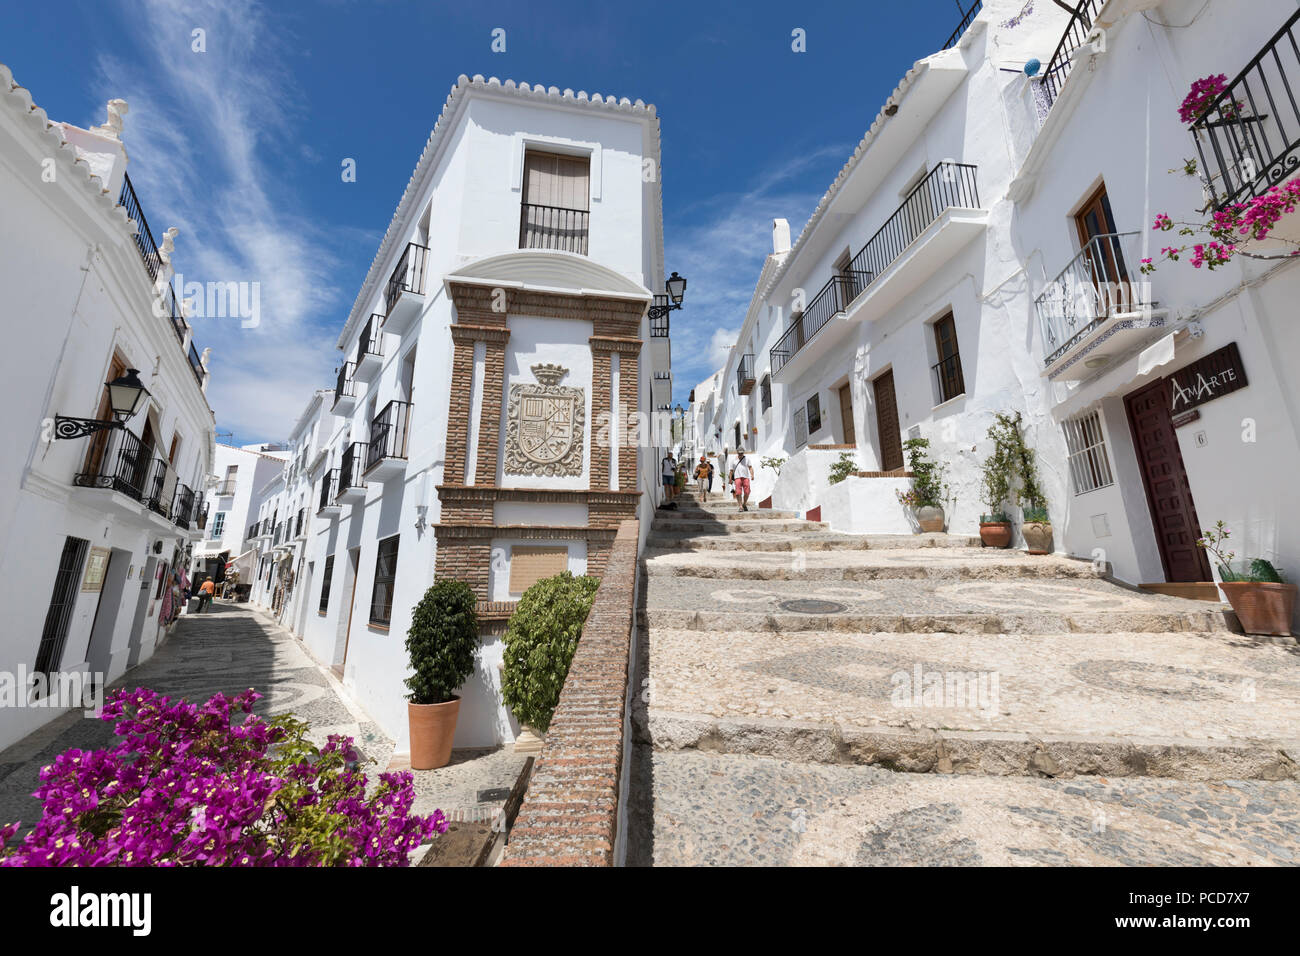 Des rues étroites avec des maisons andalouses blanchies, Frigiliana, la province de Malaga, Costa del Sol, Andalousie, Espagne, Europe Banque D'Images